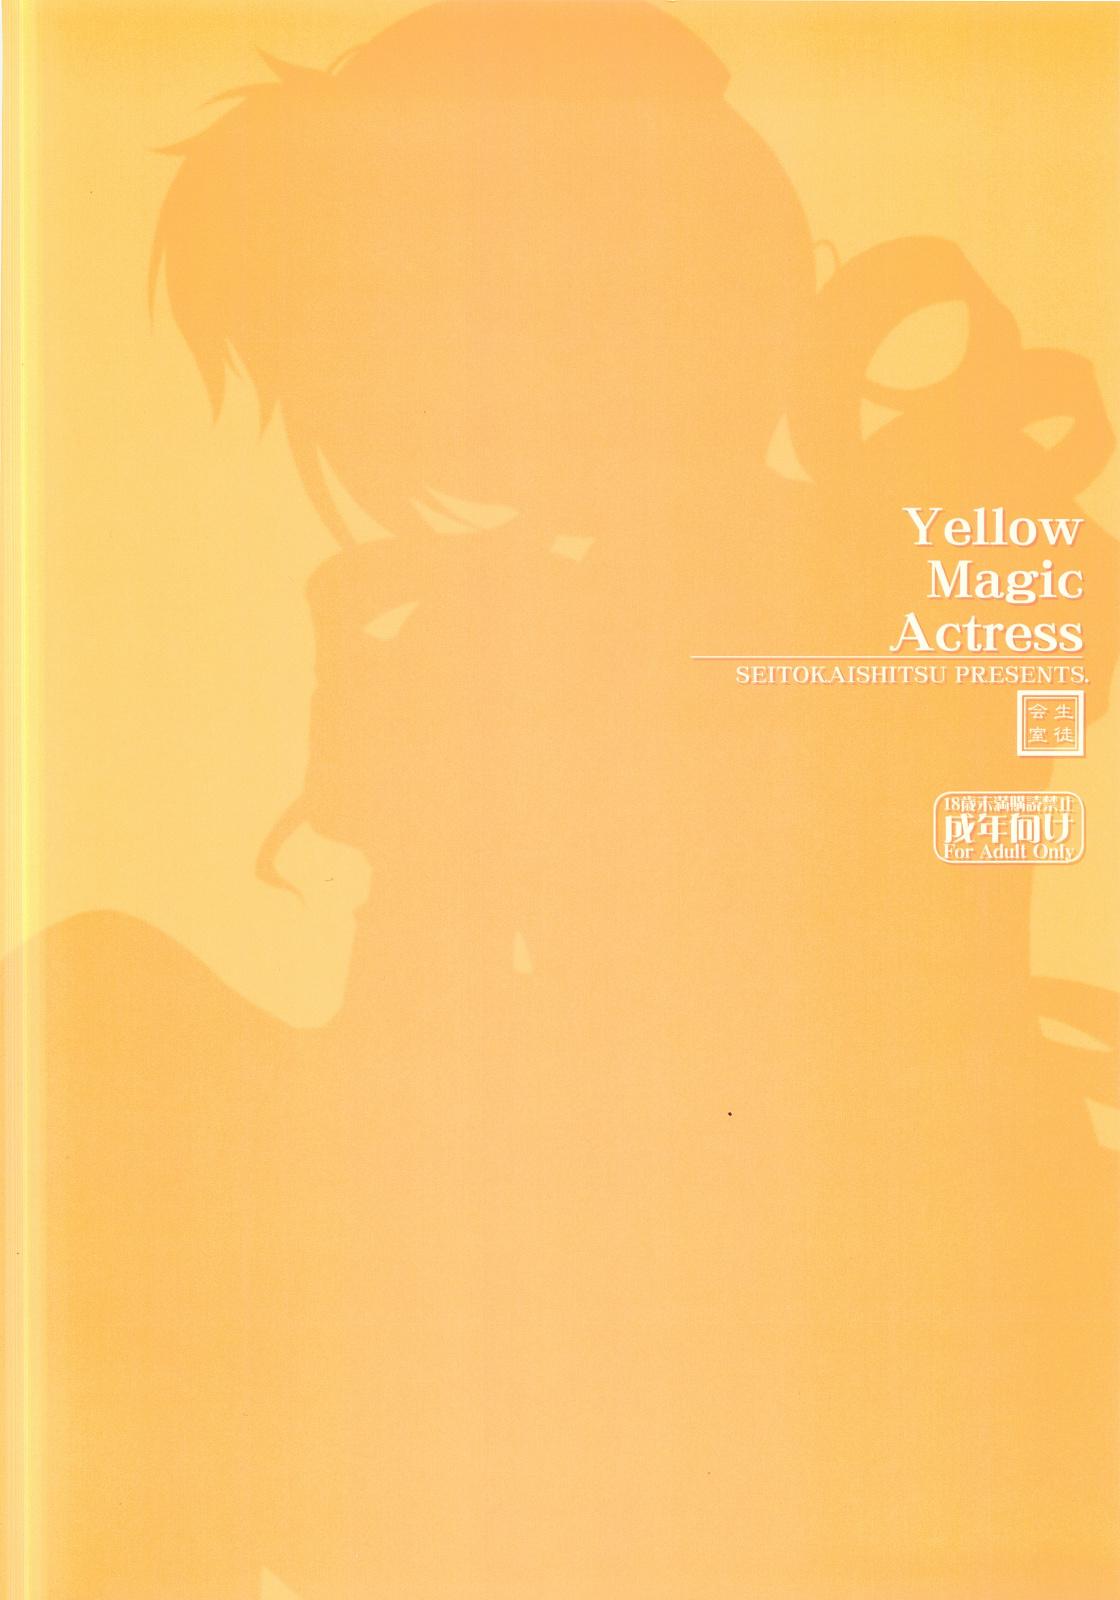 Yellow Magic Actress 17